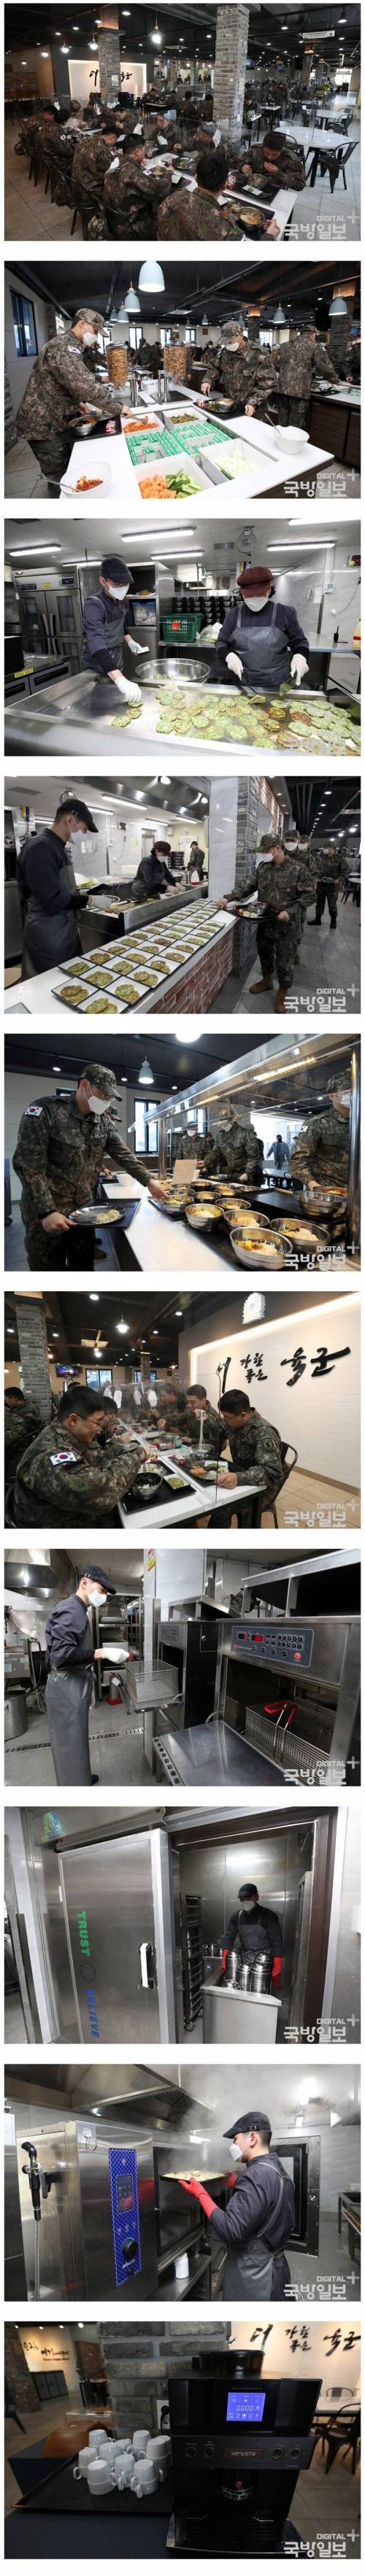 군대 식당 근황.jpg